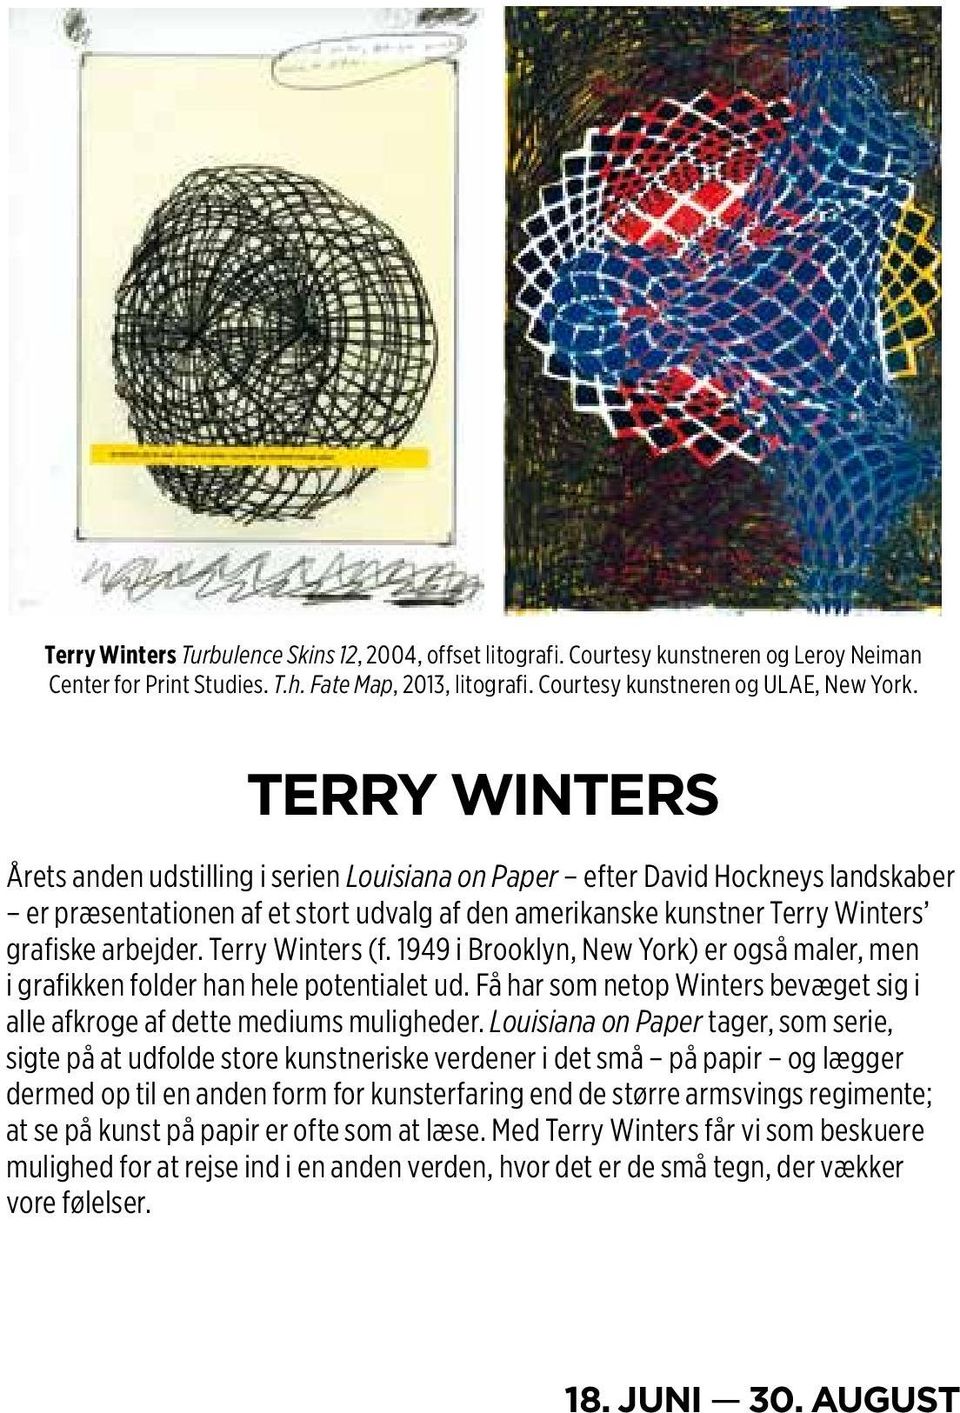 Terry Winters (f. 1949 i Brooklyn, New York) er også maler, men i grafikken folder han hele potentialet ud. Få har som netop Winters bevæget sig i alle afkroge af dette mediums muligheder.